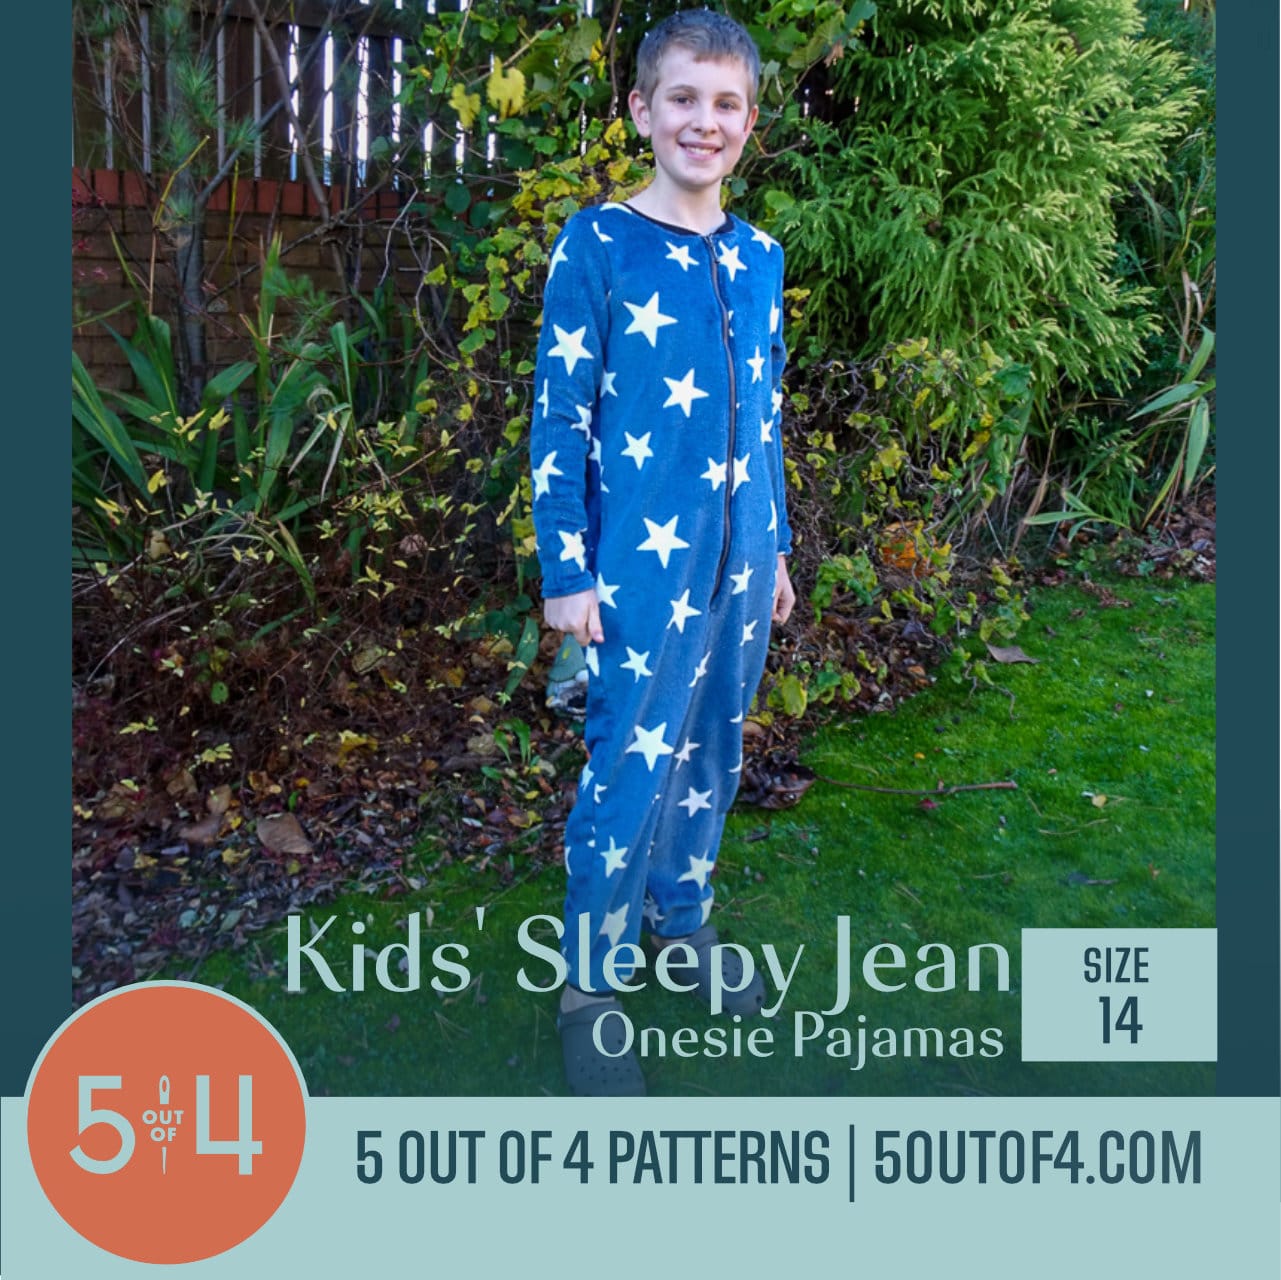 Sleepy Jean Onesie Pajamas - 5 out of 4 Patterns